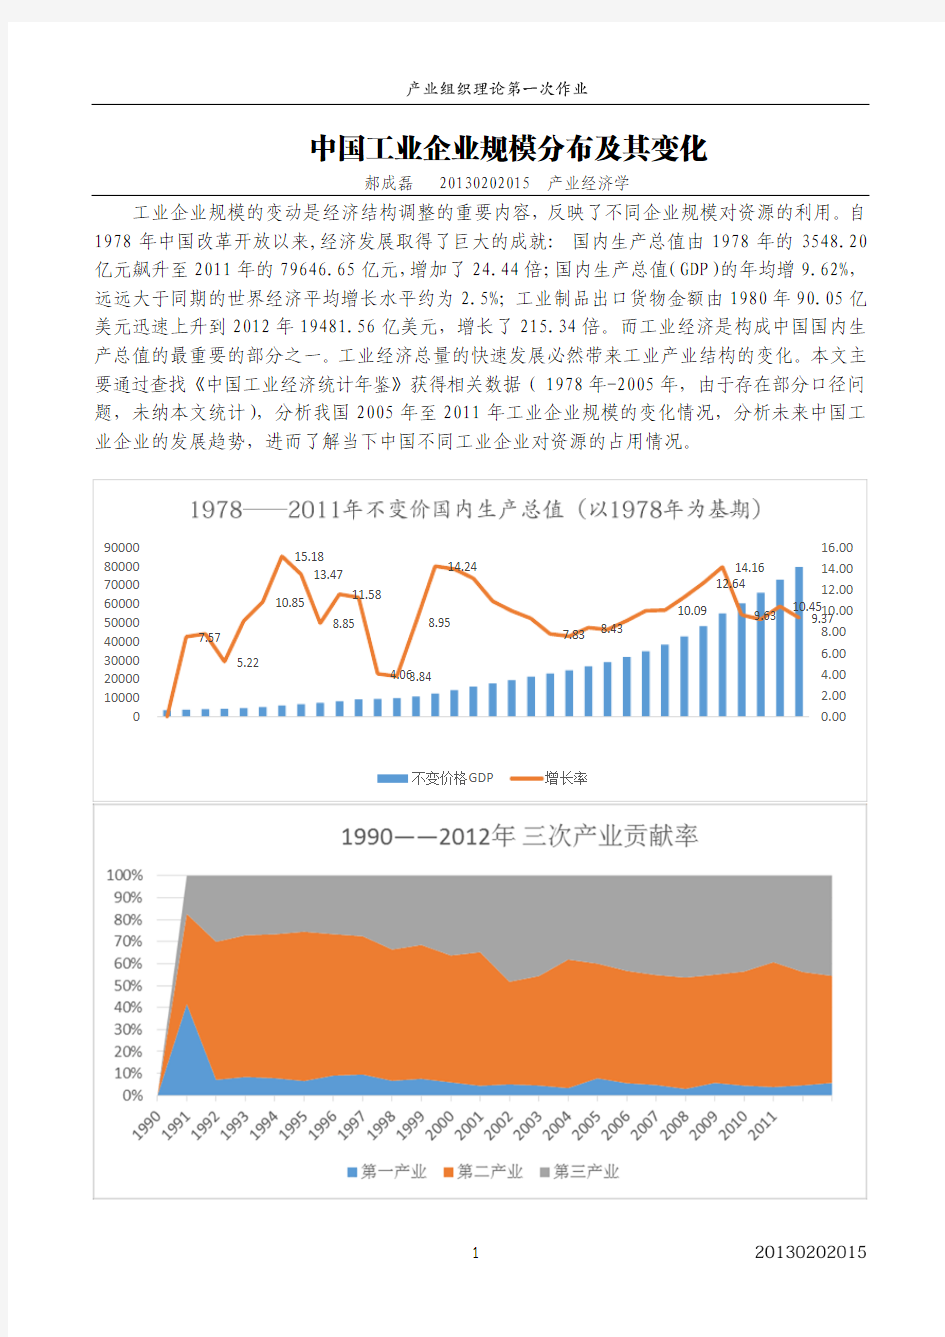 中国工业企业规模分布及其变化